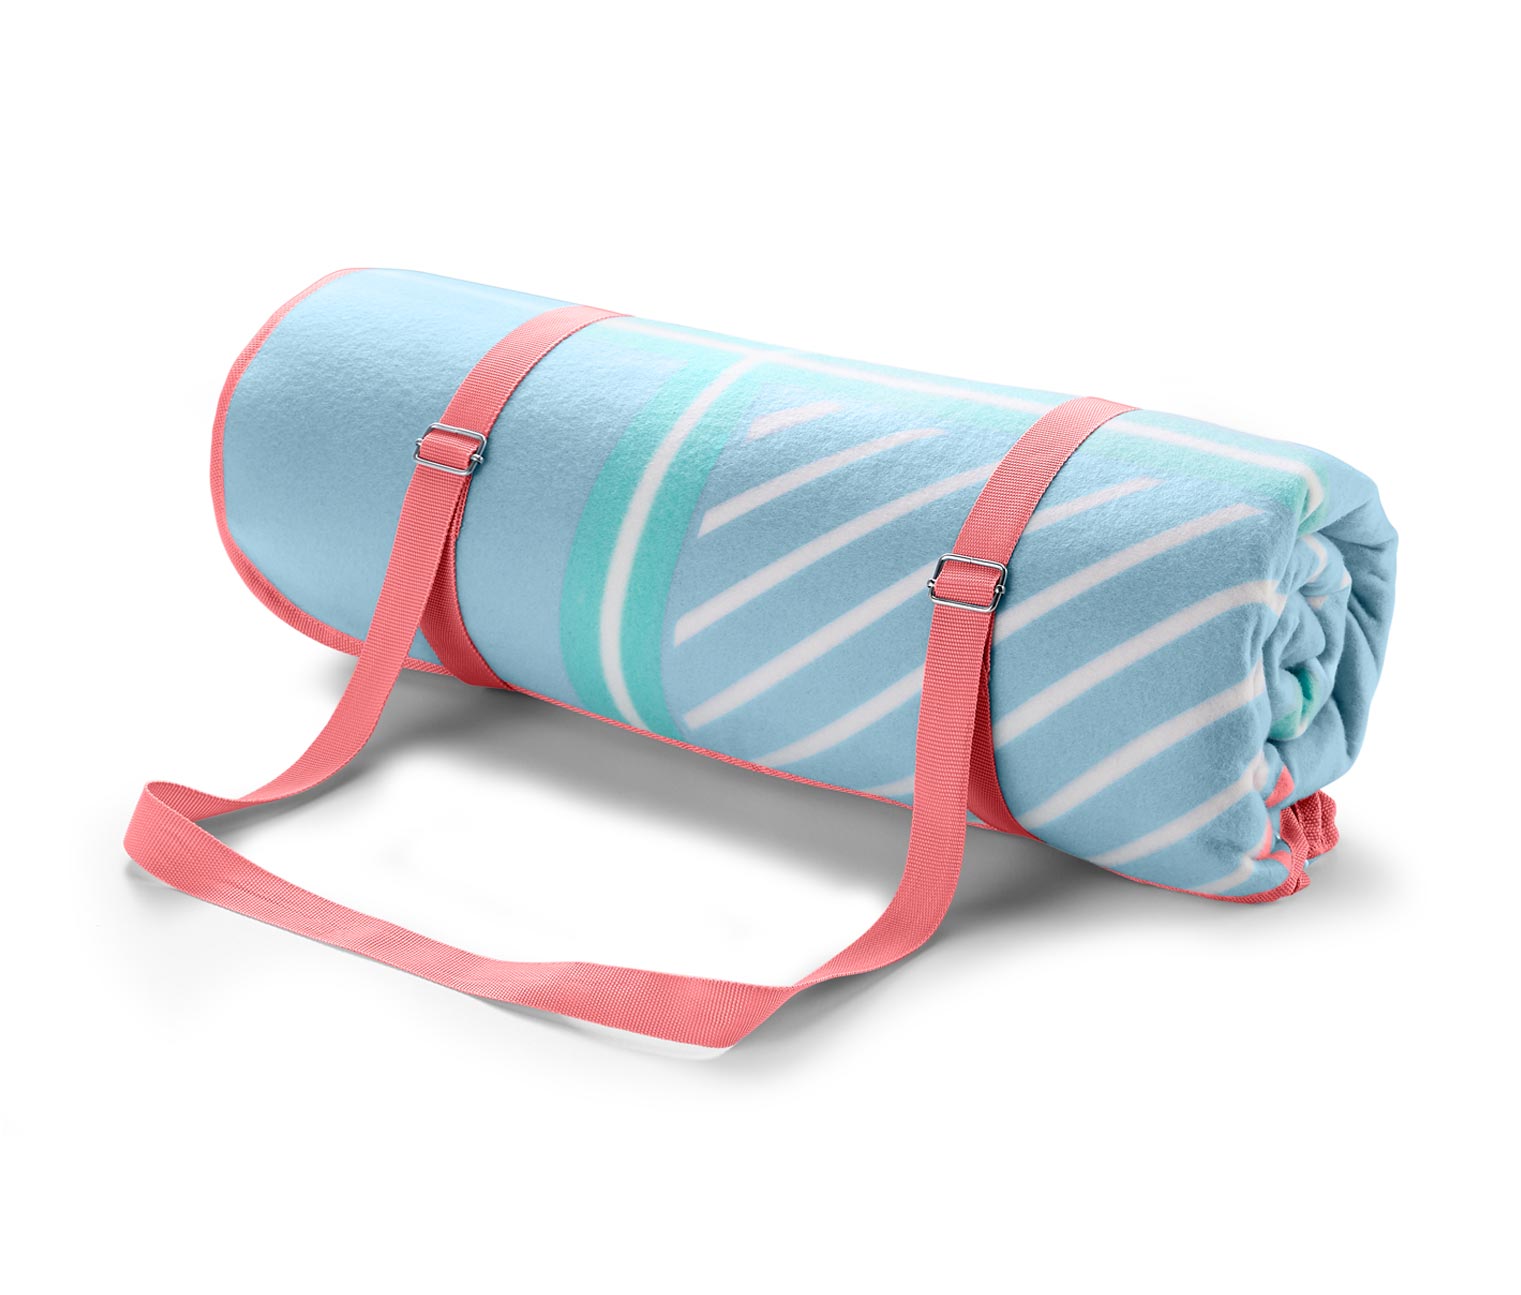 XL-Picknickdecke online bestellen bei Tchibo 372534